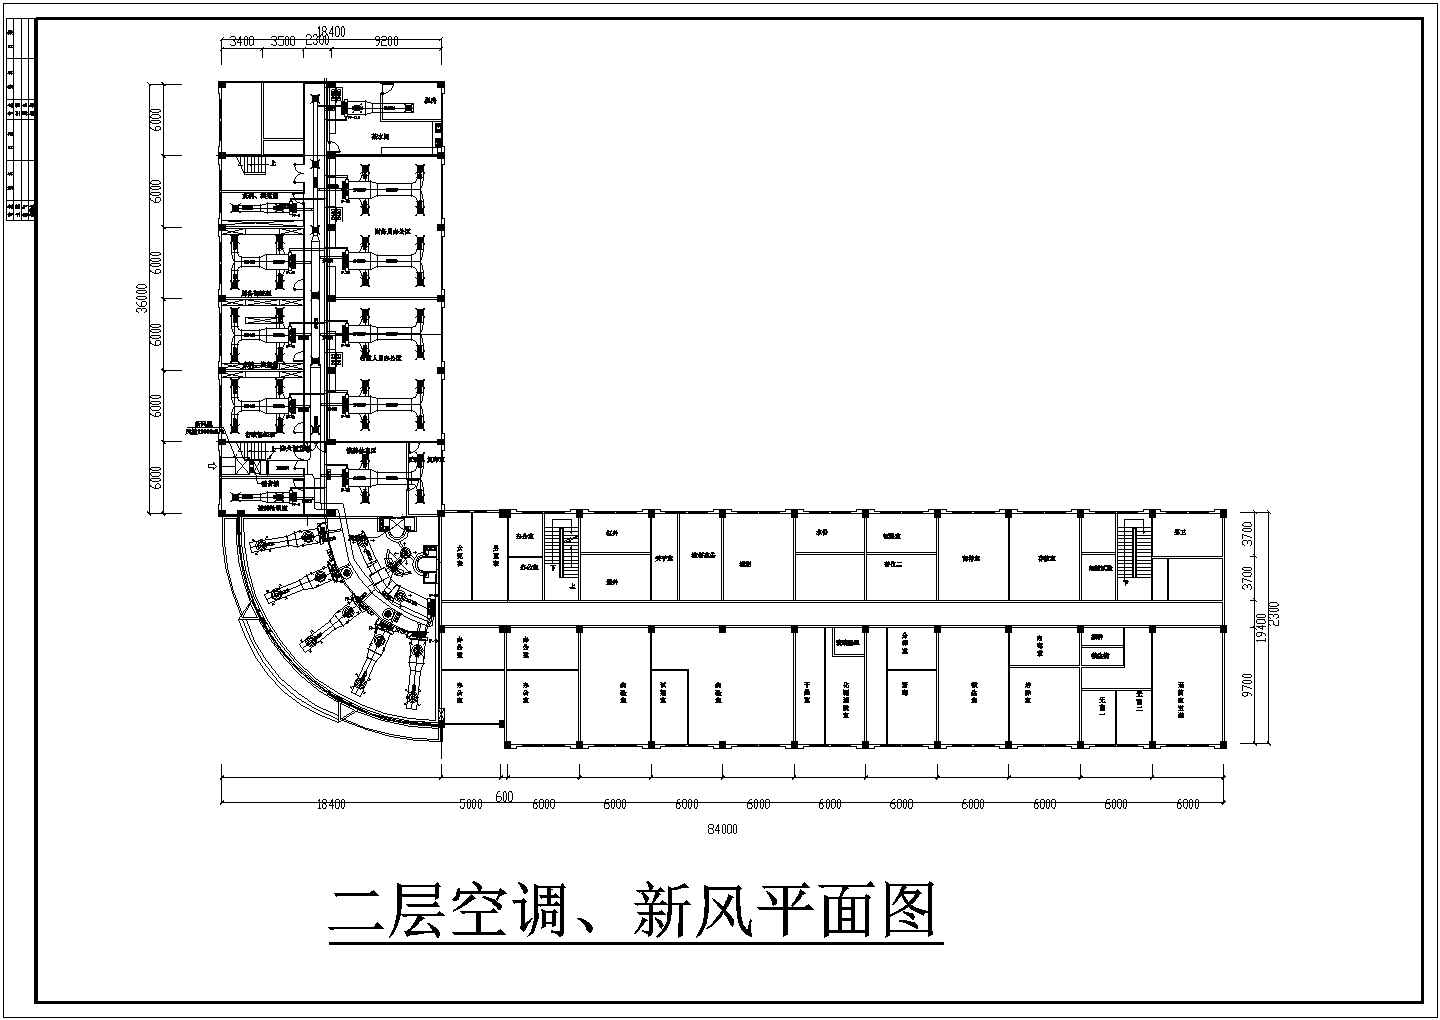 制药厂三层办公大楼空调系统设计施工图